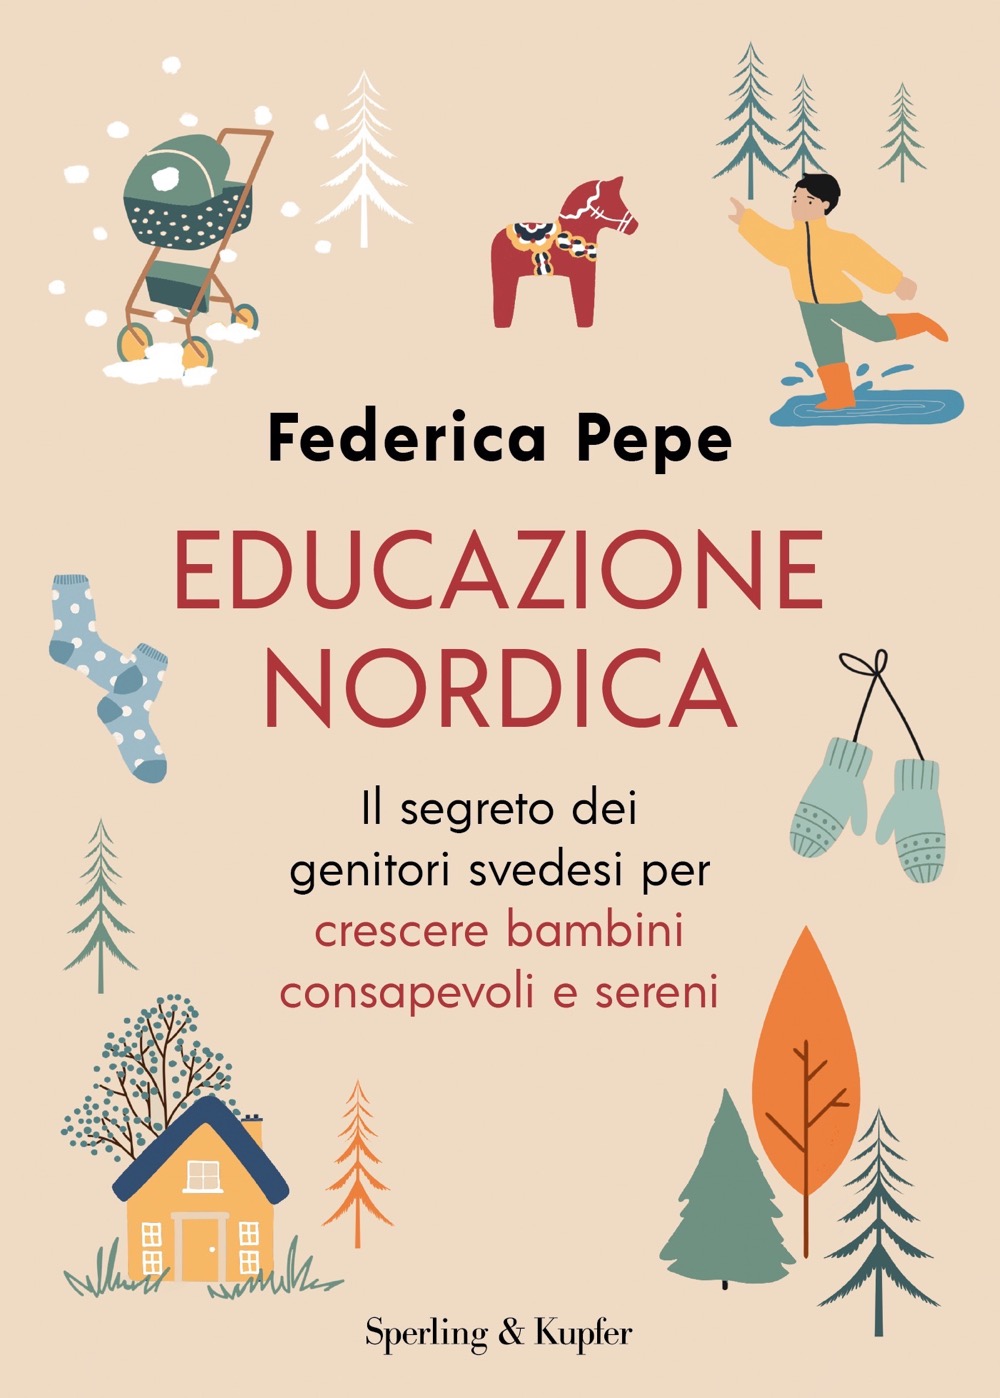 Educazione nordica - Sperling & Kupfer Editore